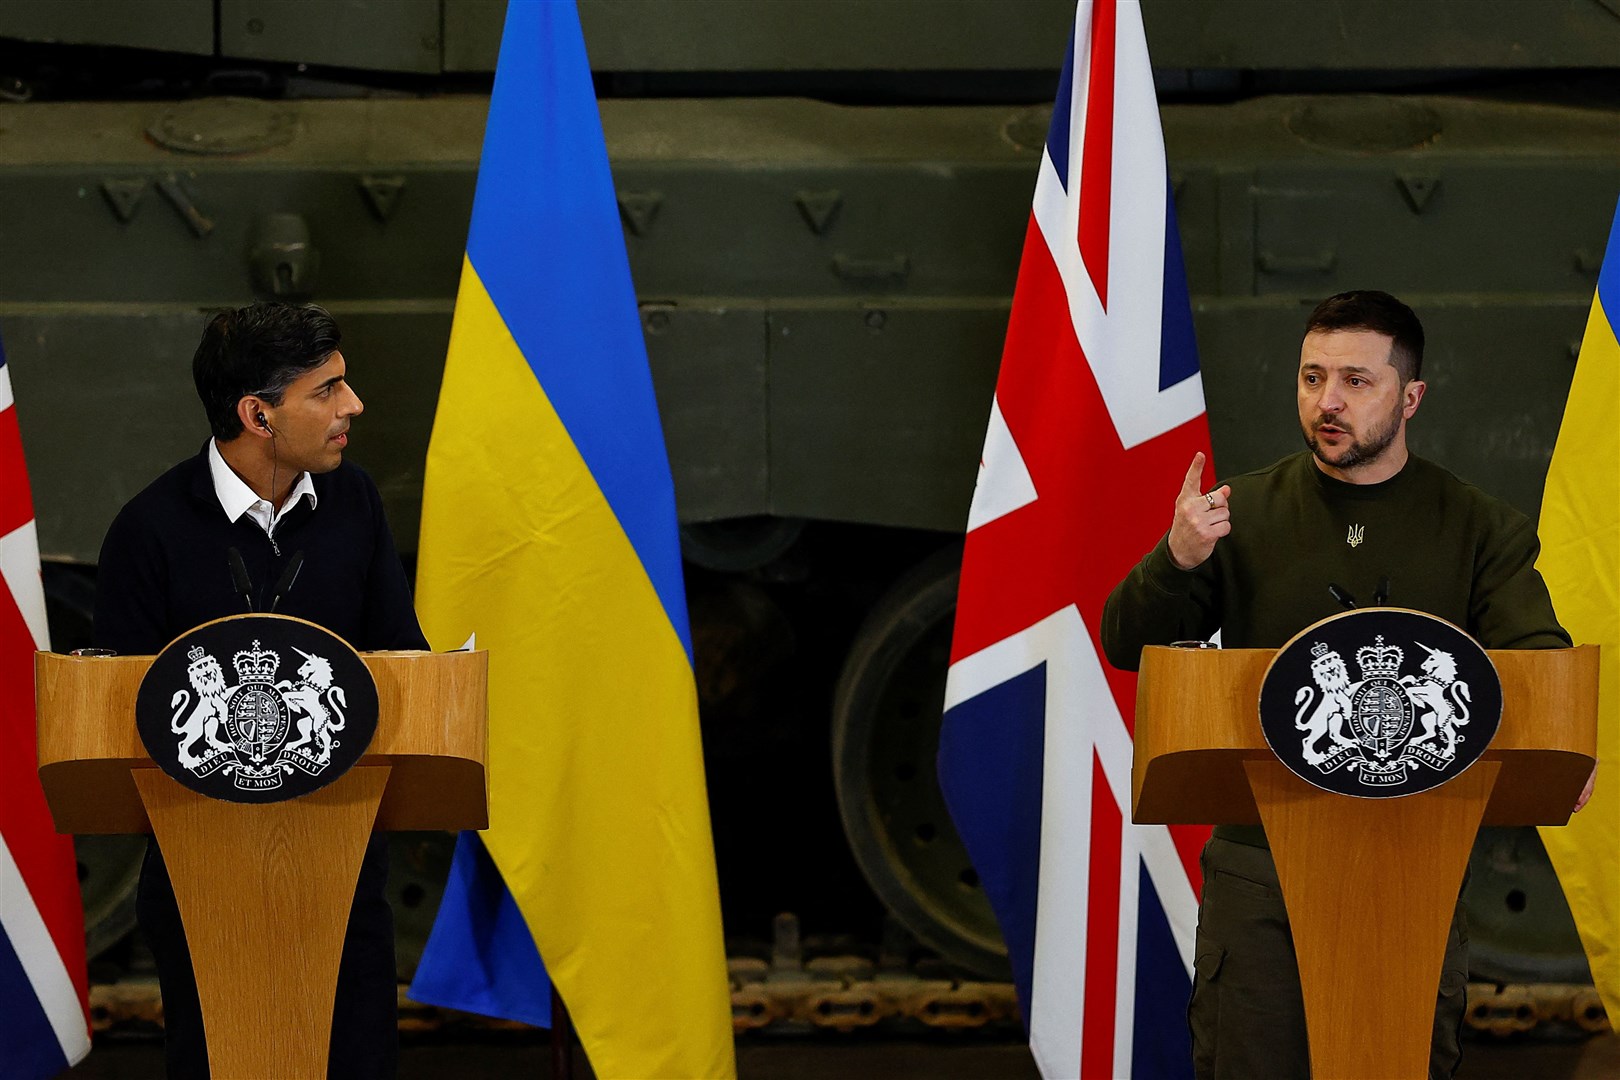 Ukrainian President Volodymyr Zelensky on a recent visit to the UK (Peter Nicholls/PA)